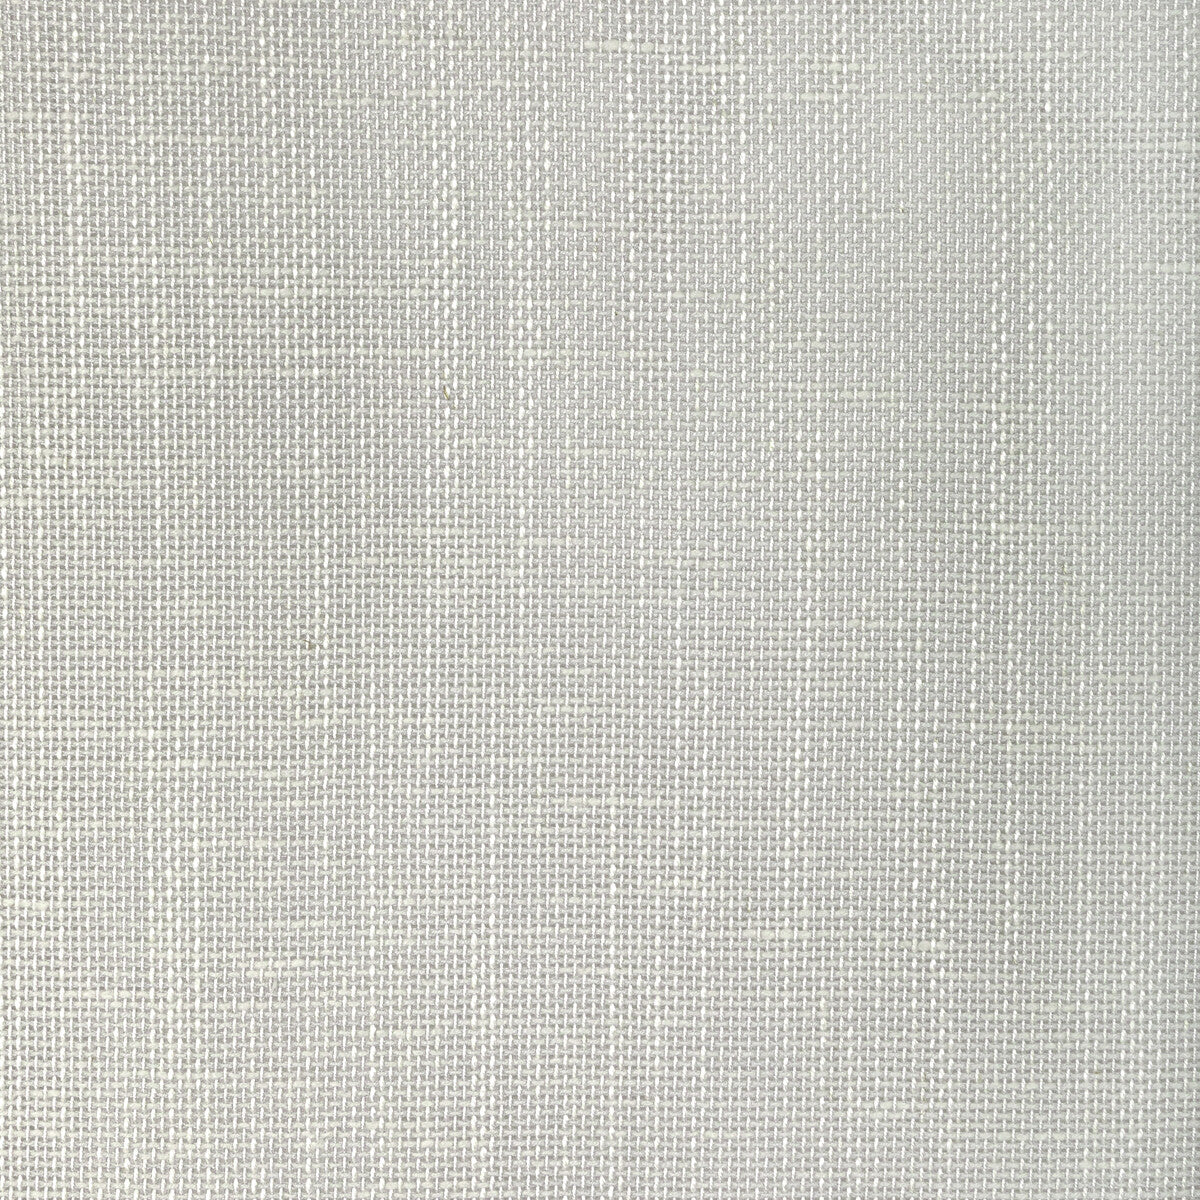 Kravet Basics fabric in 4939-11 color - pattern 4939.11.0 - by Kravet Basics